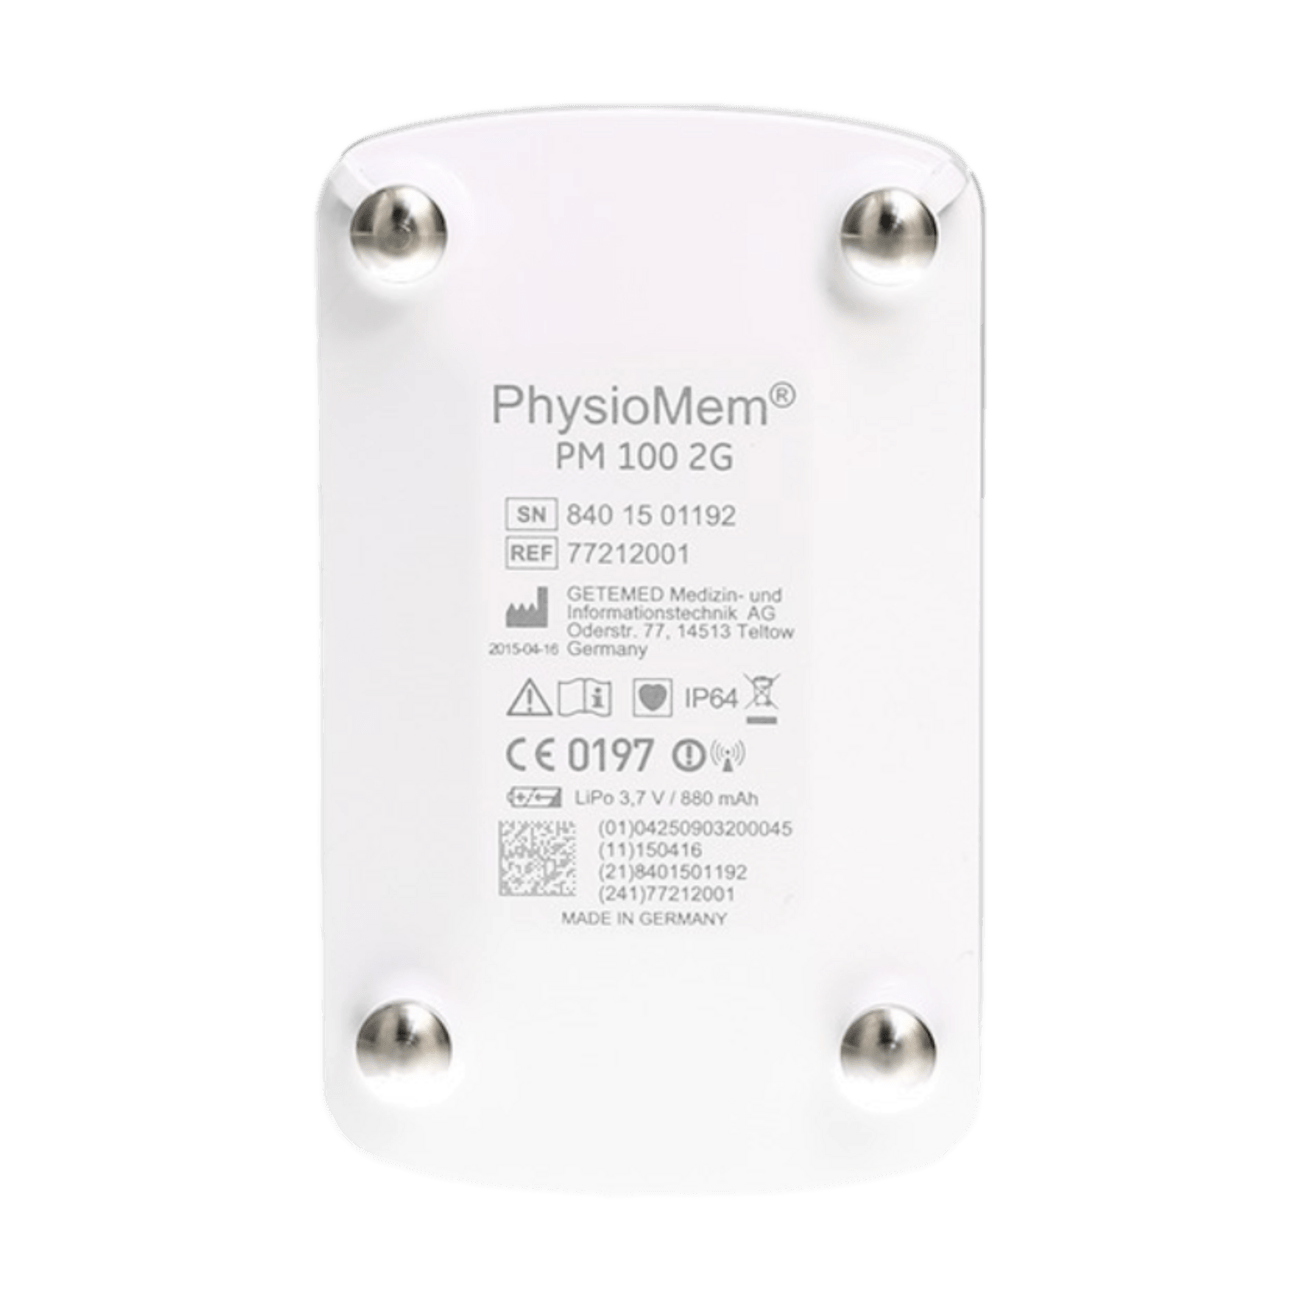 PhysioMem PM100